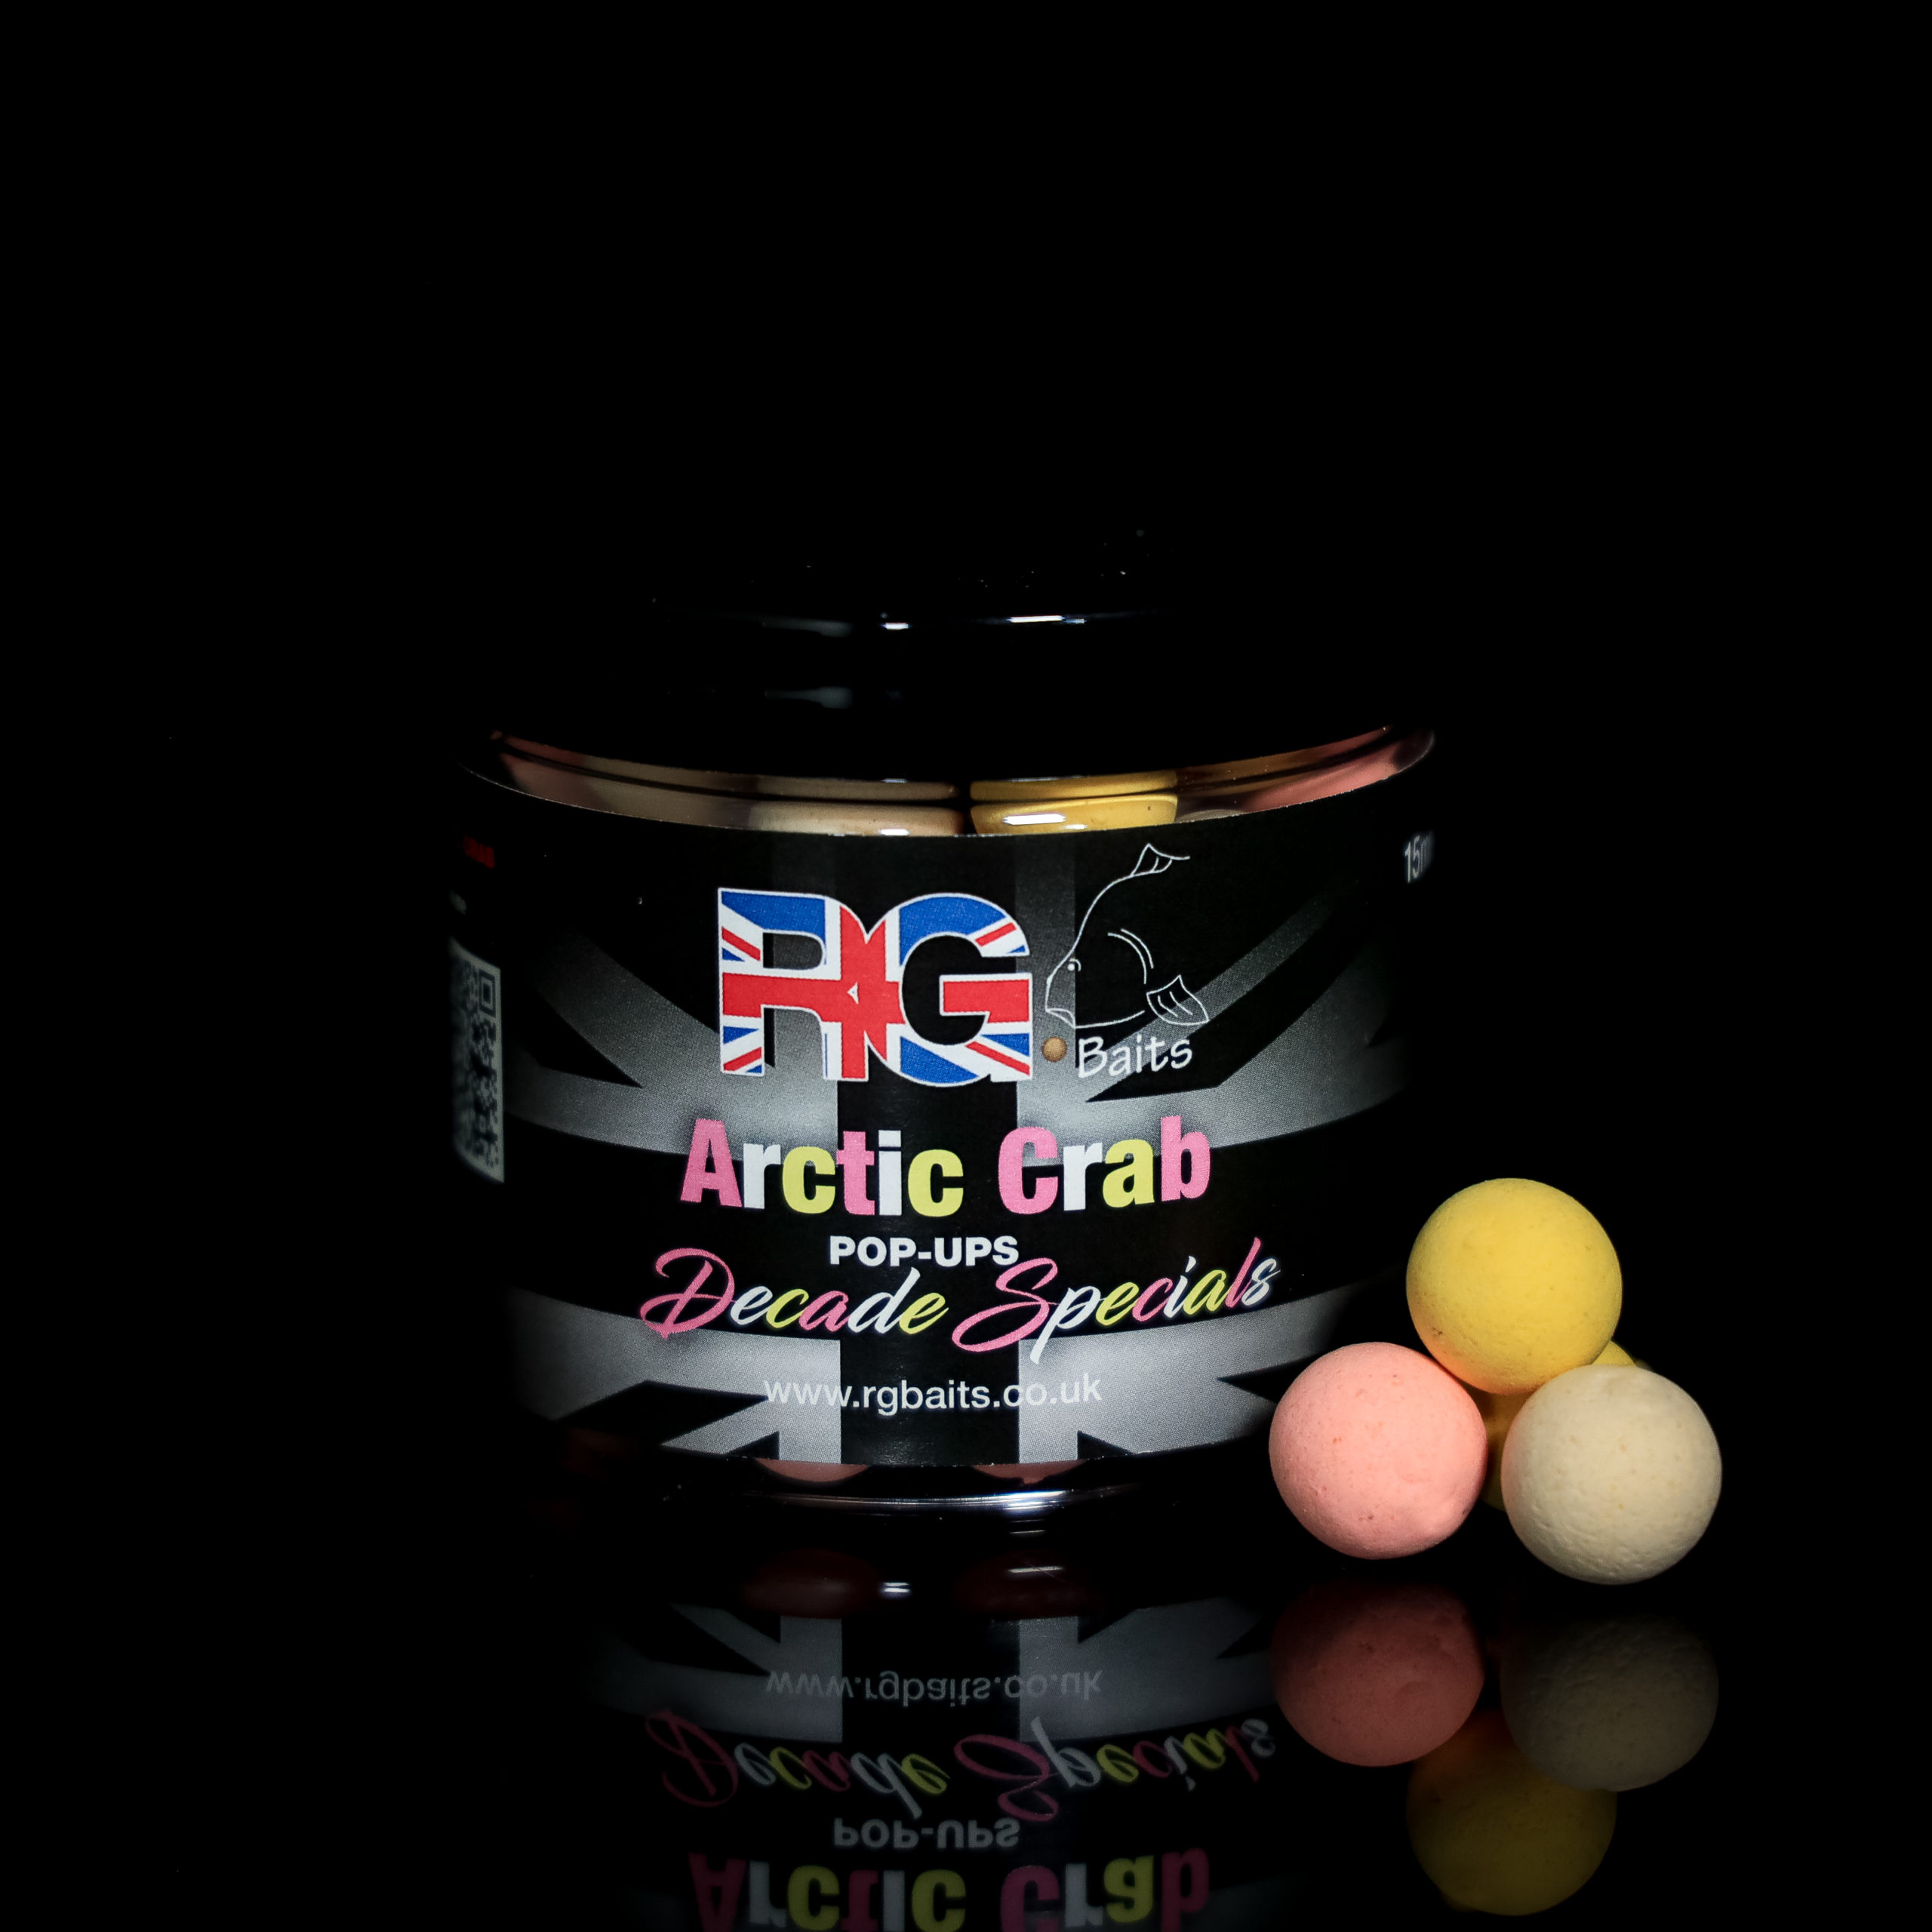 Arctic Crab ‘Decade Specials’ Pop-ups